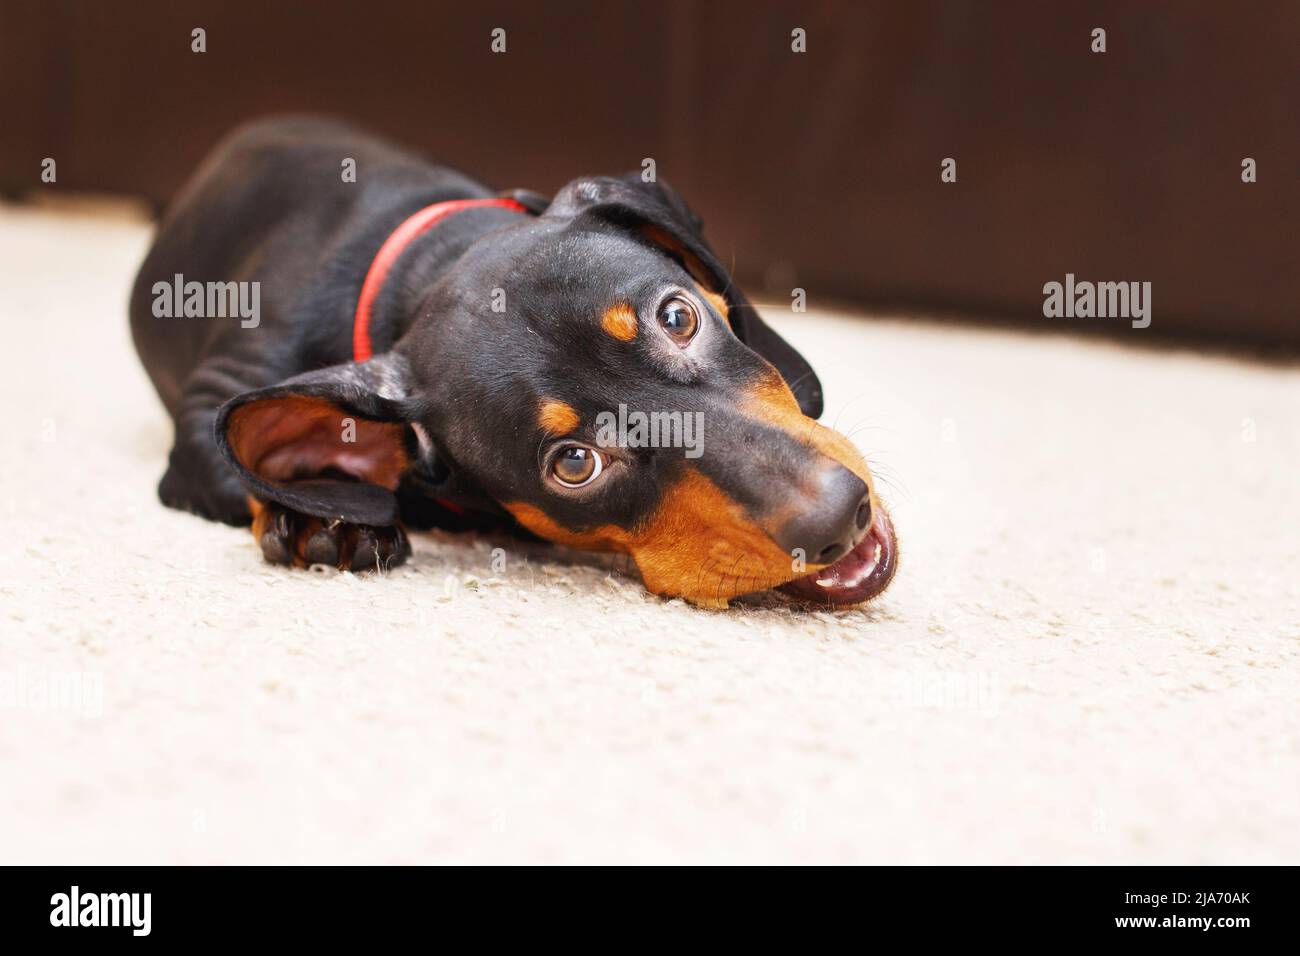 Porträt von niedlichen Hund Dackel mit einem getrockneten leckeren Leckerbissen Snack in den Zähnen. Hund Leckereien zum Zähneputzen. Stockfoto